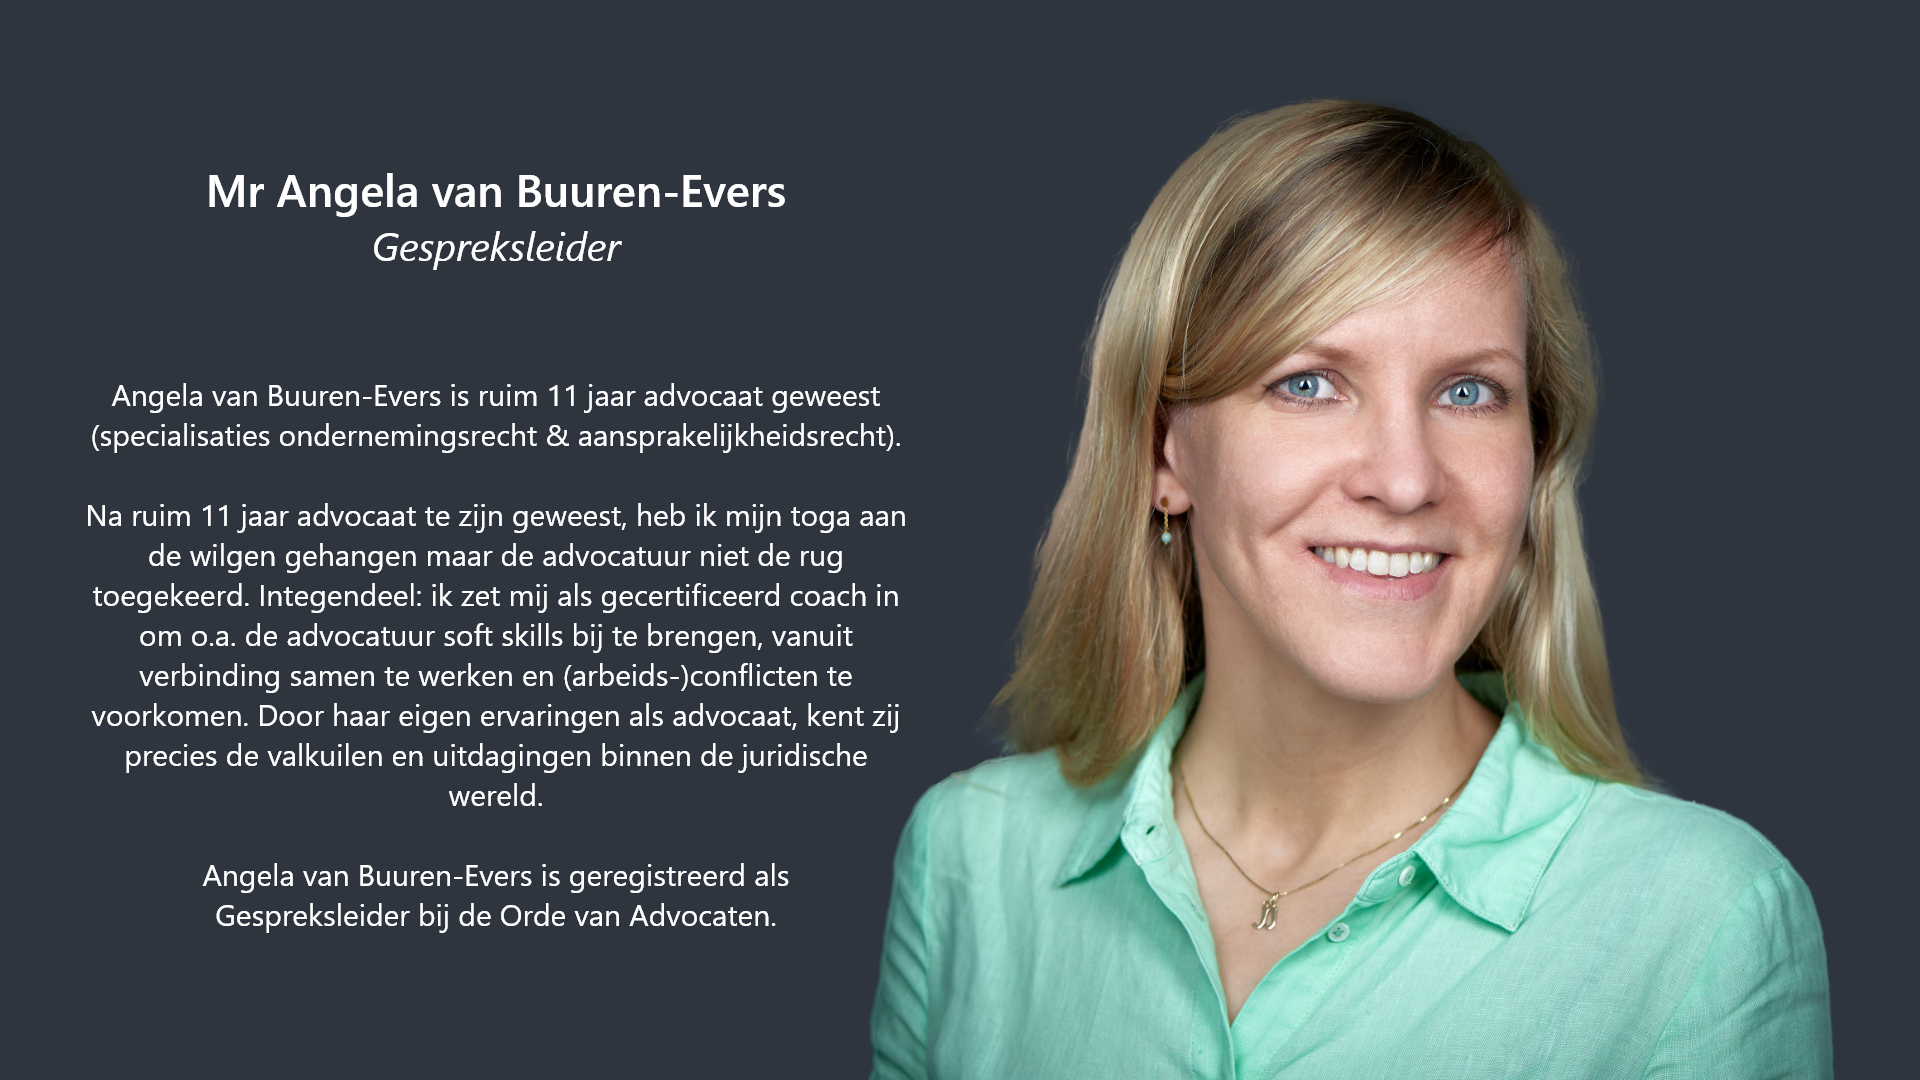 Angela van Buuren-Evers